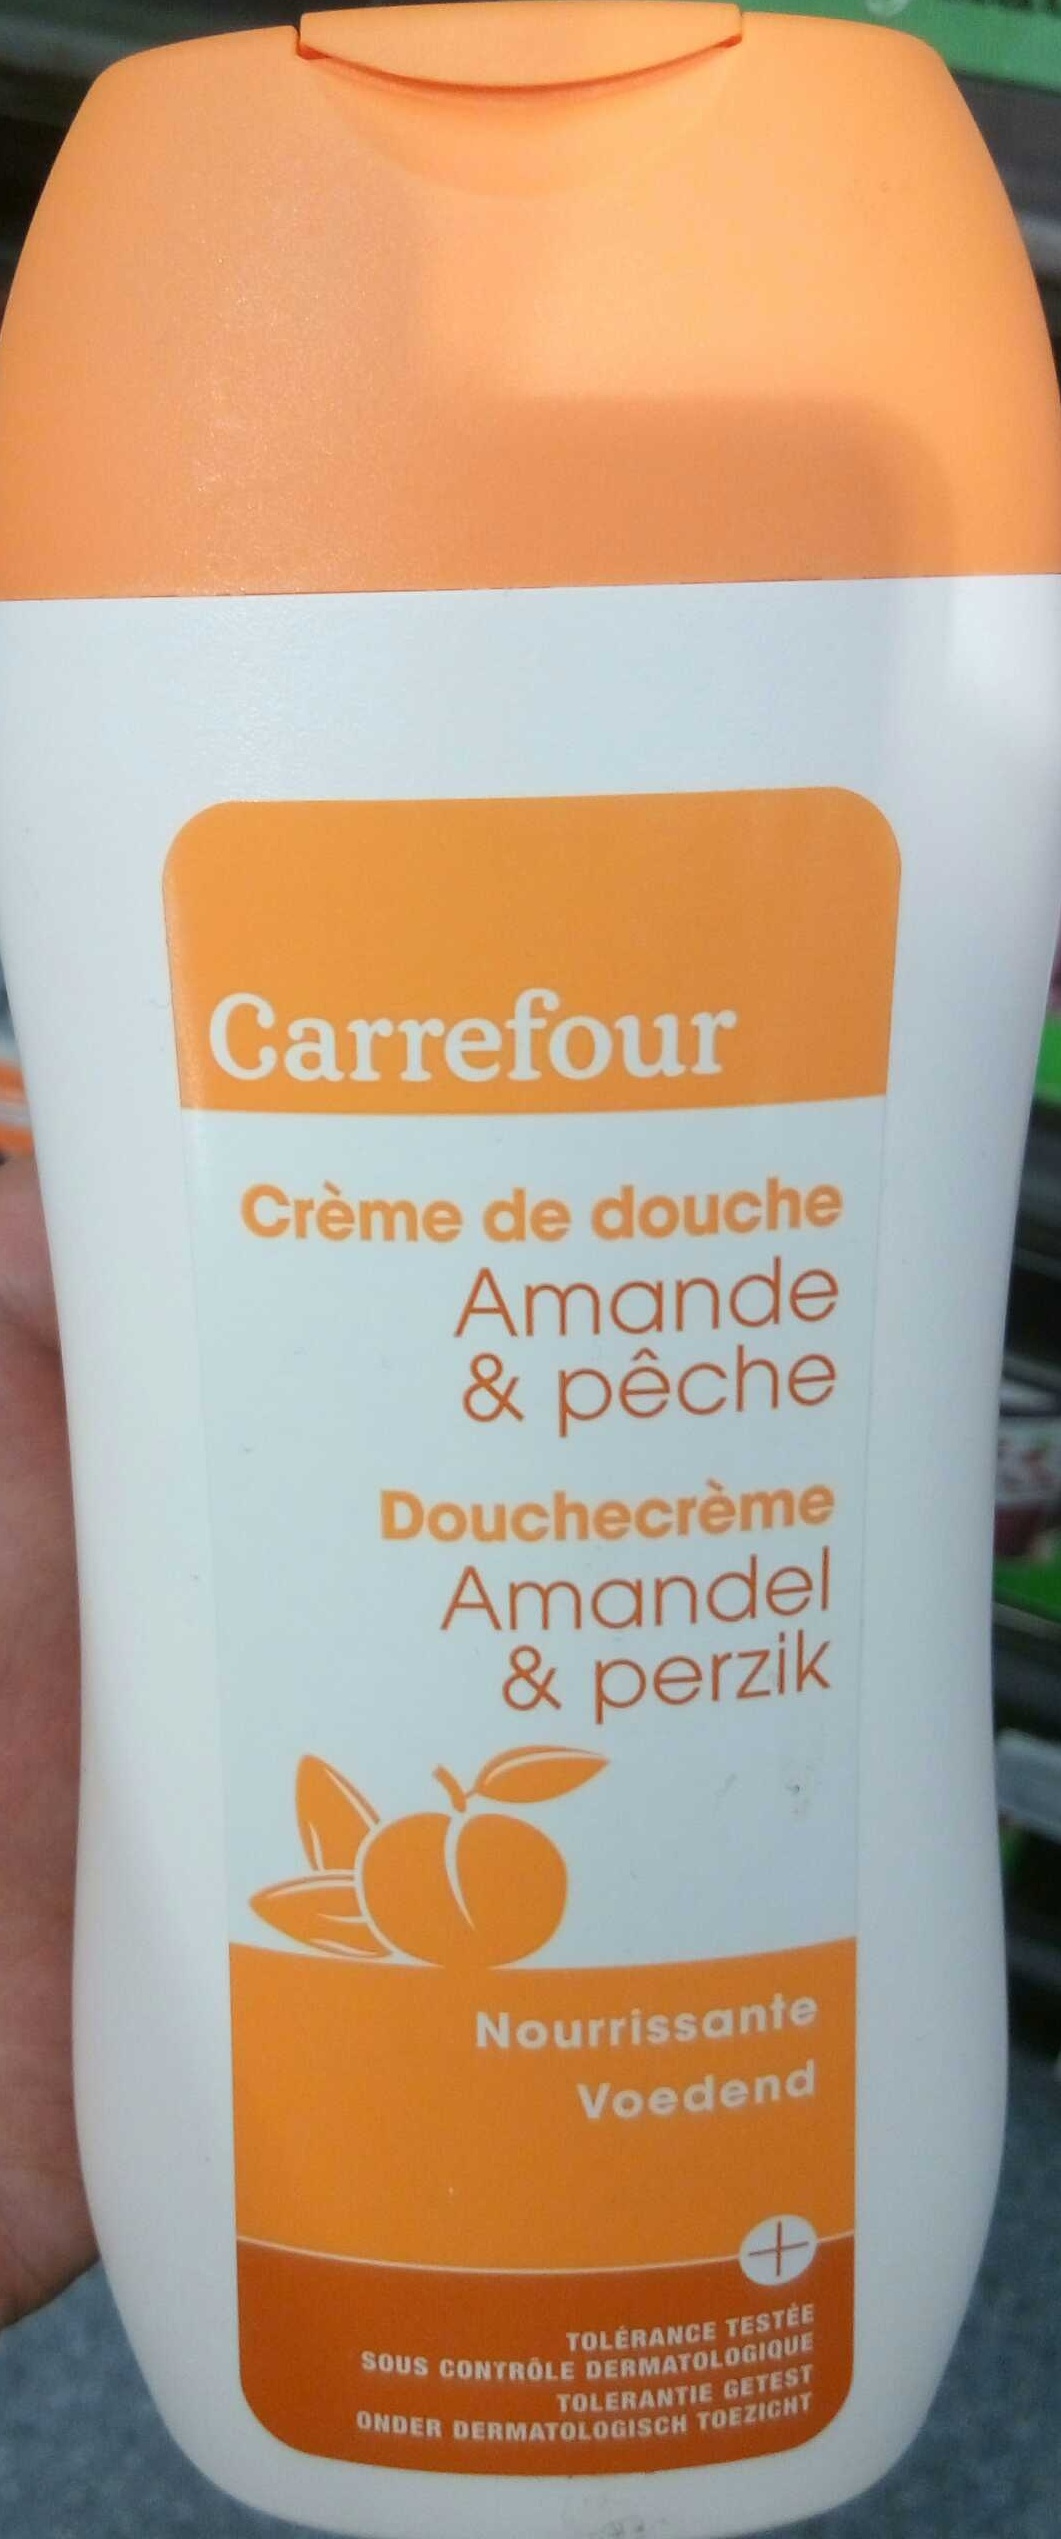 Crème de douche Amande & pêche nourrissante - Product - fr